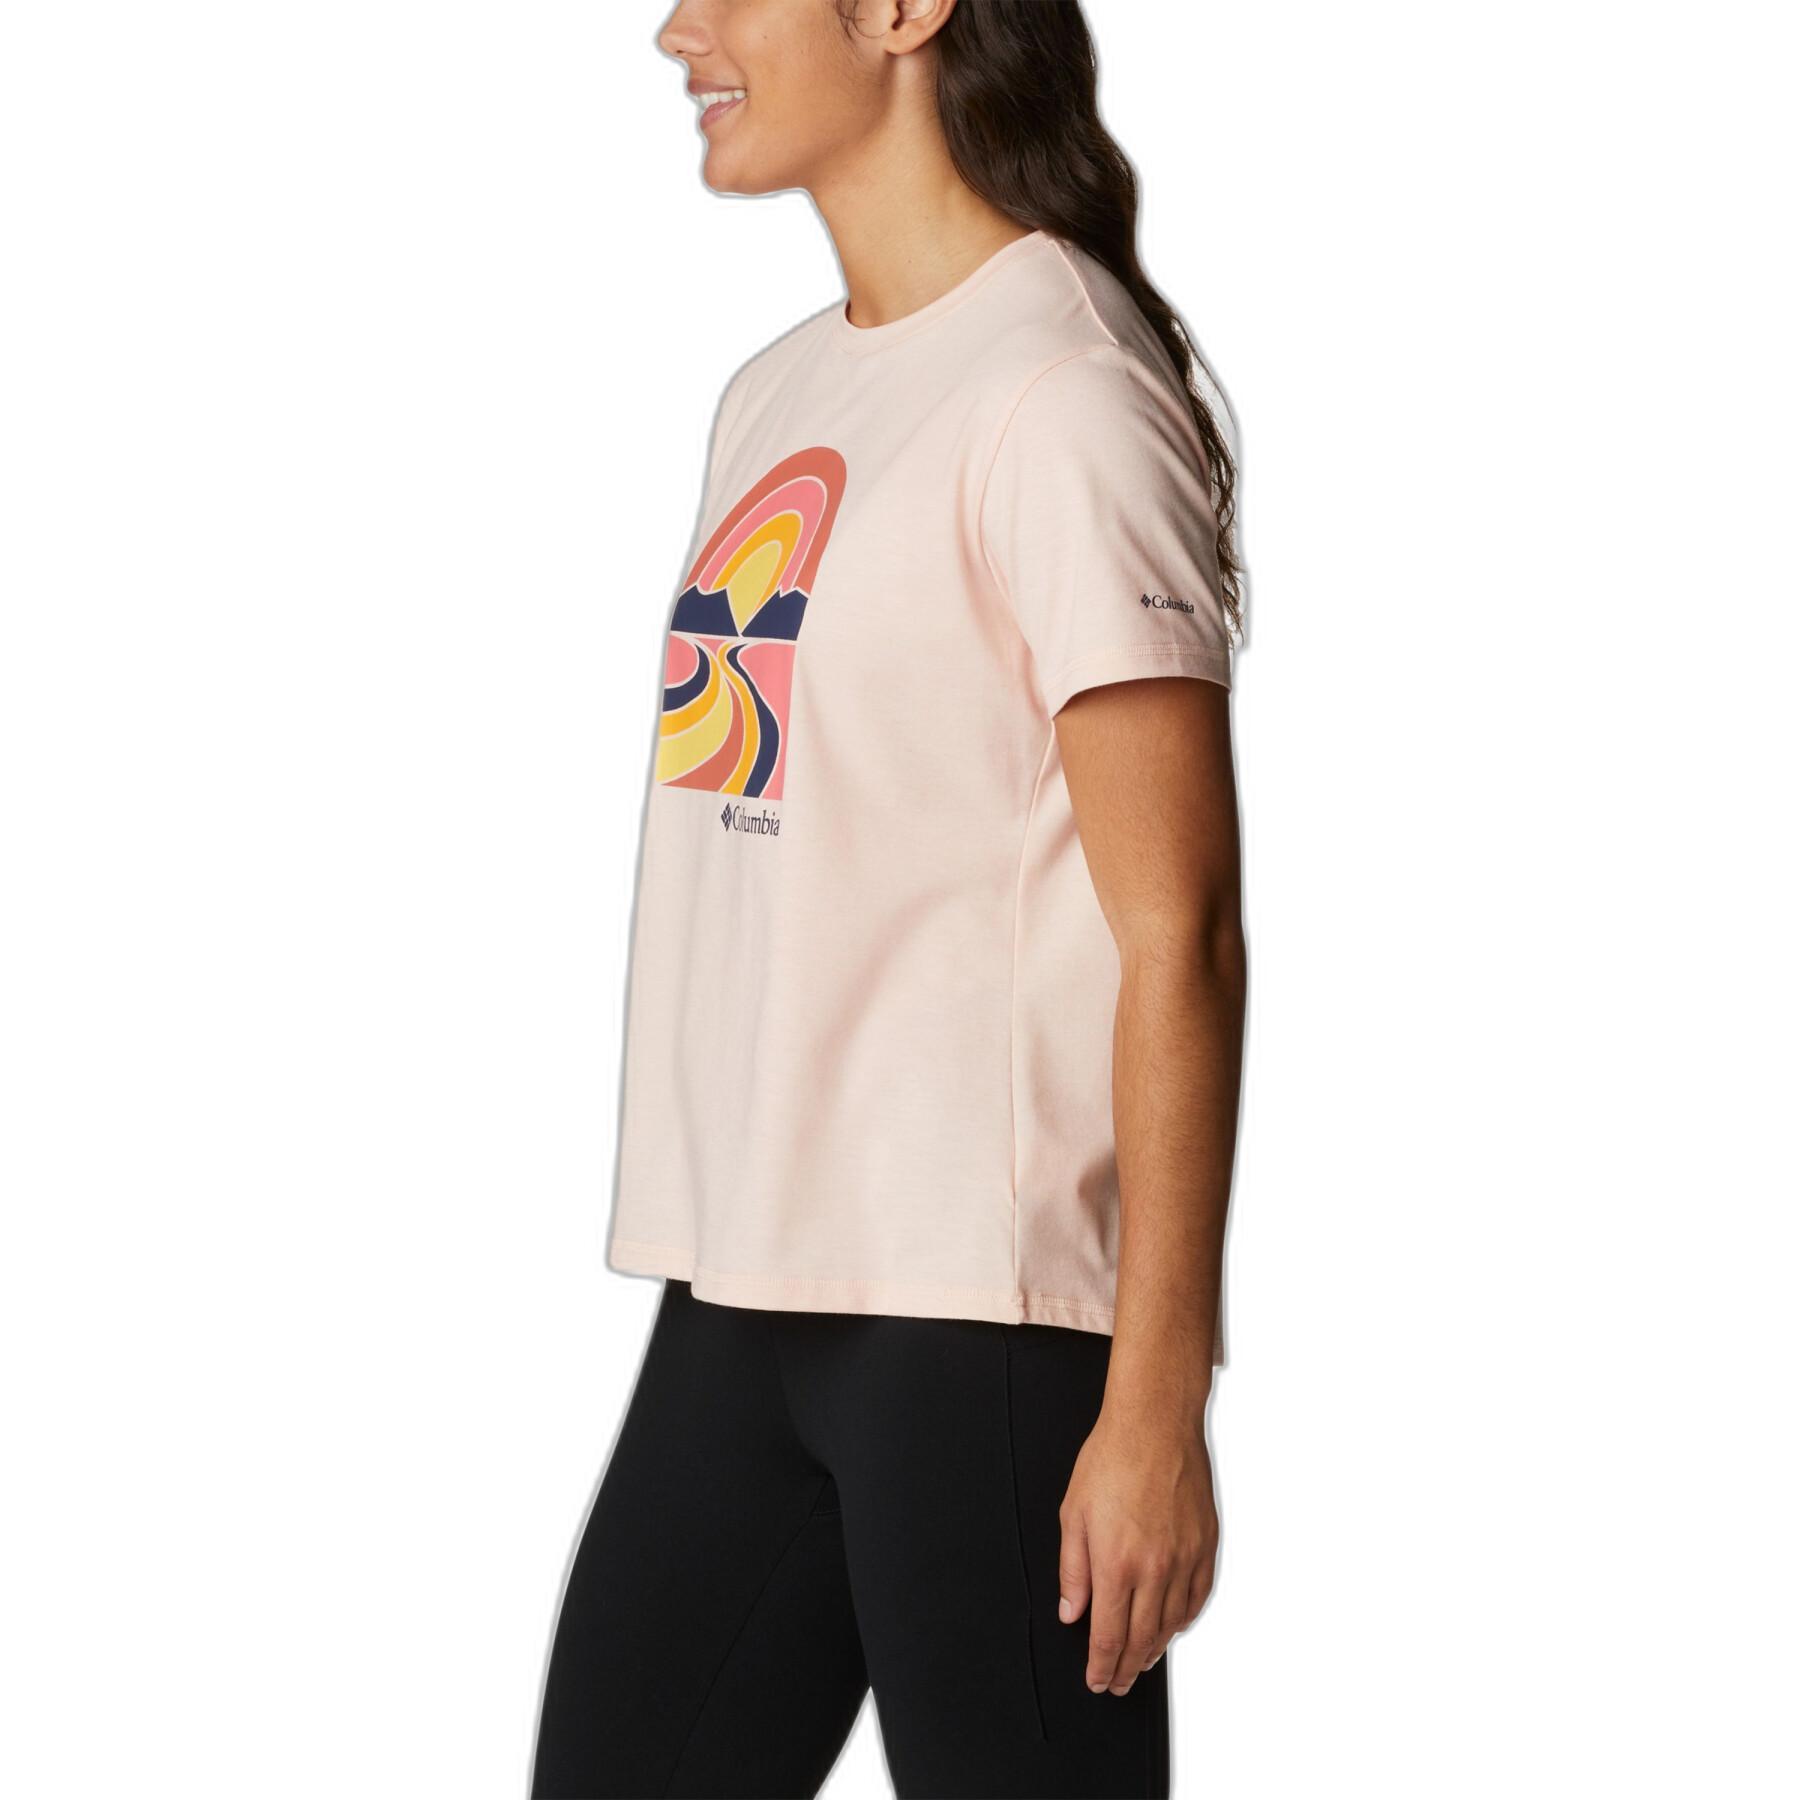 T-shirt för kvinnor Columbia Sun Trek™